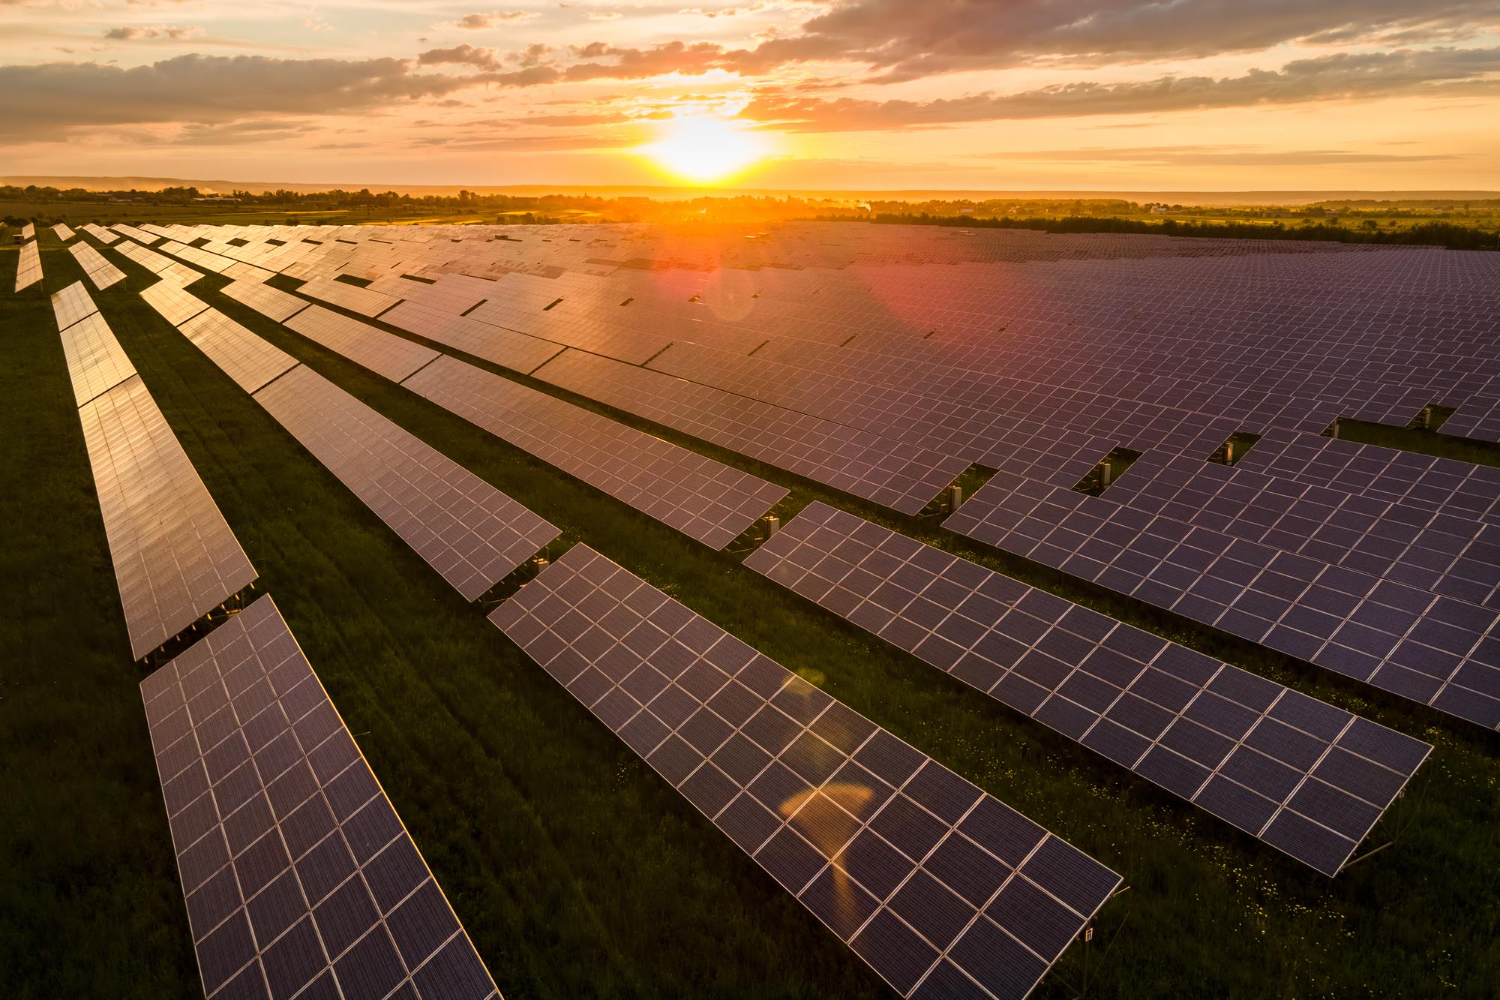 A parceria entre a Gerdau e a Newave para o Parque Solar Arinos representa um marco importante para o avanço das renováveis no Brasil.